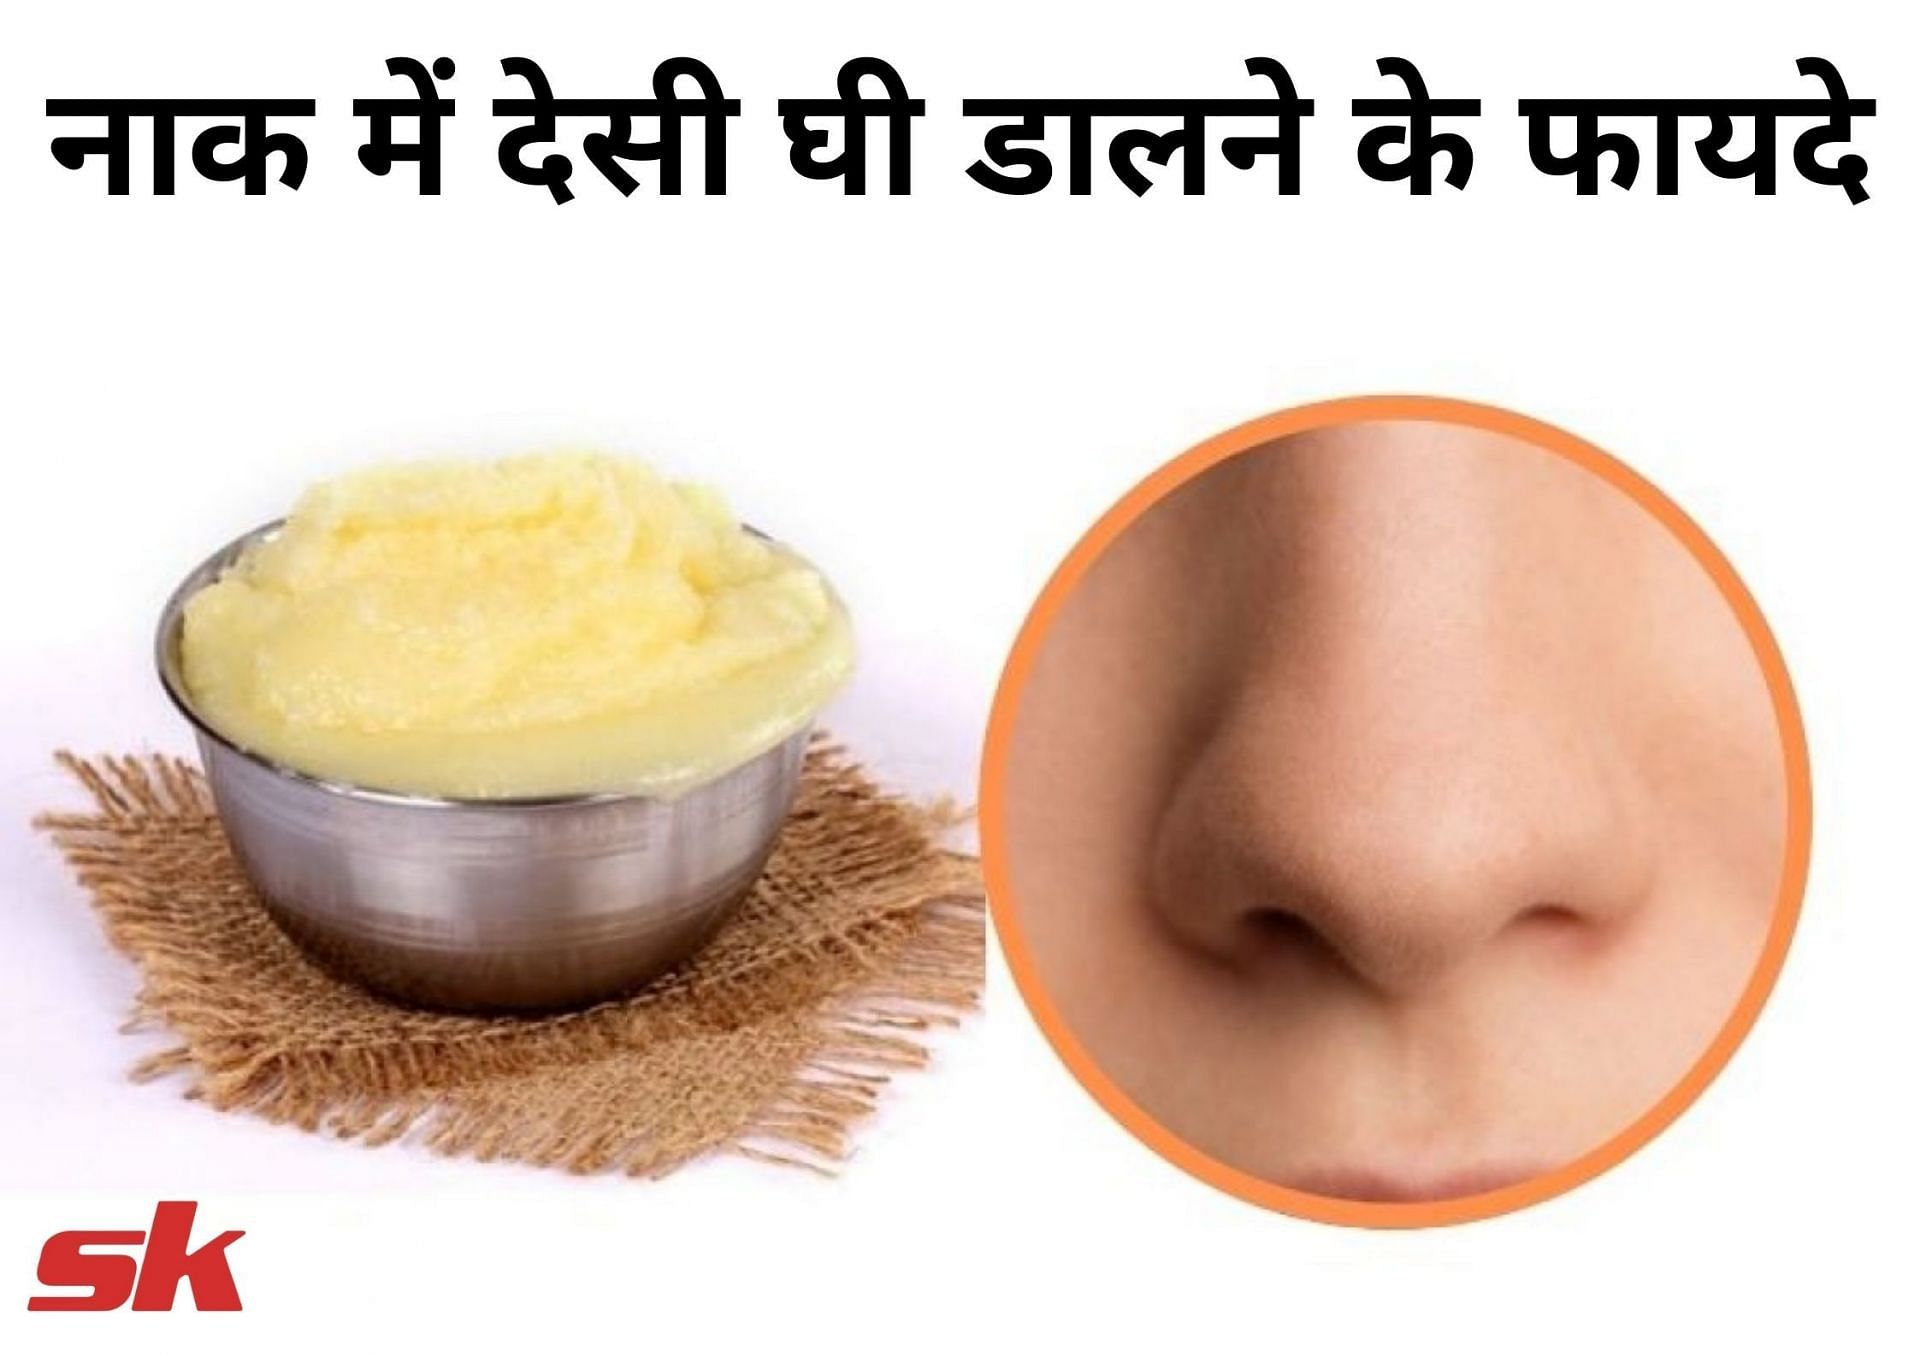 नाक में देसी घी डालने के फायदे (फोटो - sportskeeda hindi)